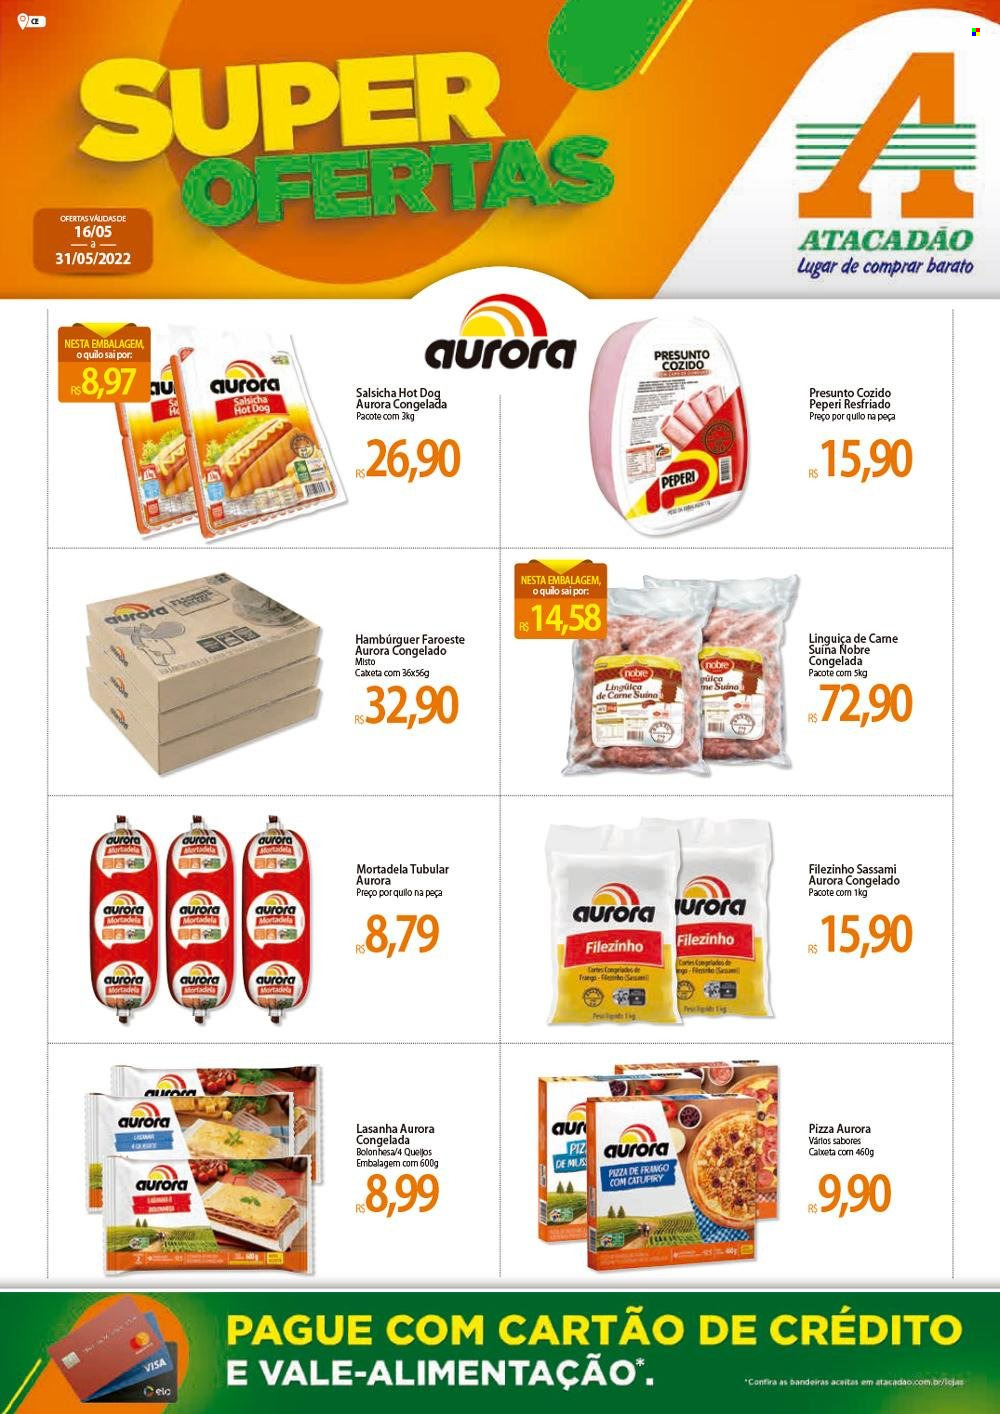 thumbnail - Folheto Atacadão - 16/05/2022 - 31/05/2022 - Produtos em promoção - carne suína, hamburger, Aurora, pizza, lasanha, hot dog, mortadela, linguiça, salsicha. Página 1.